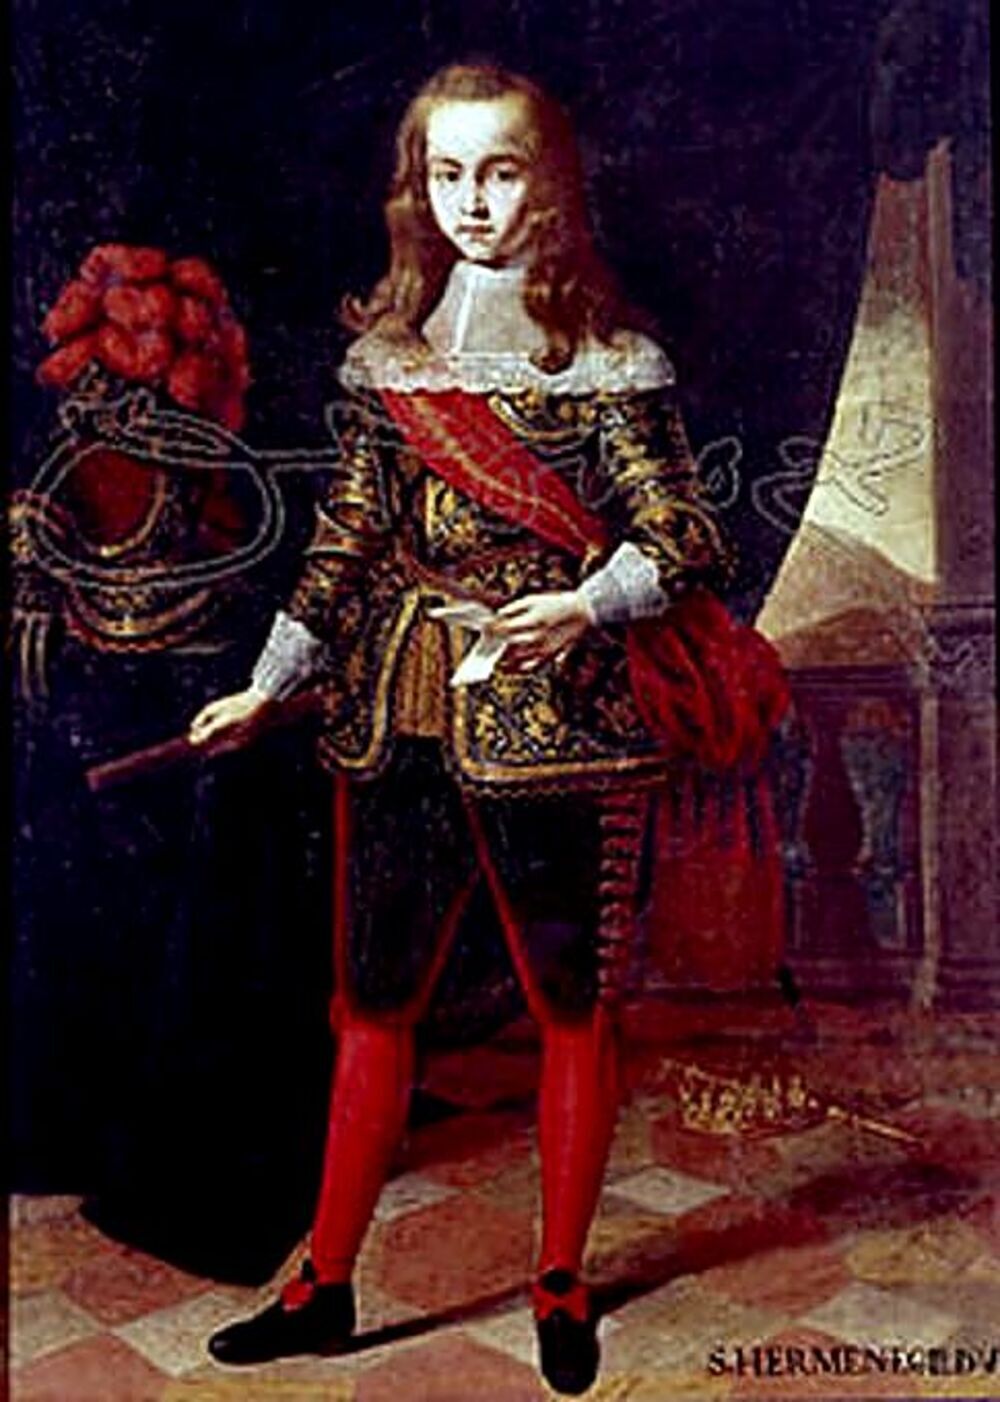 Juan José de Austria fue reconocido por el Rey como su hijo ilegítimo, fruto de una relación extramatrimonial con la actriz.